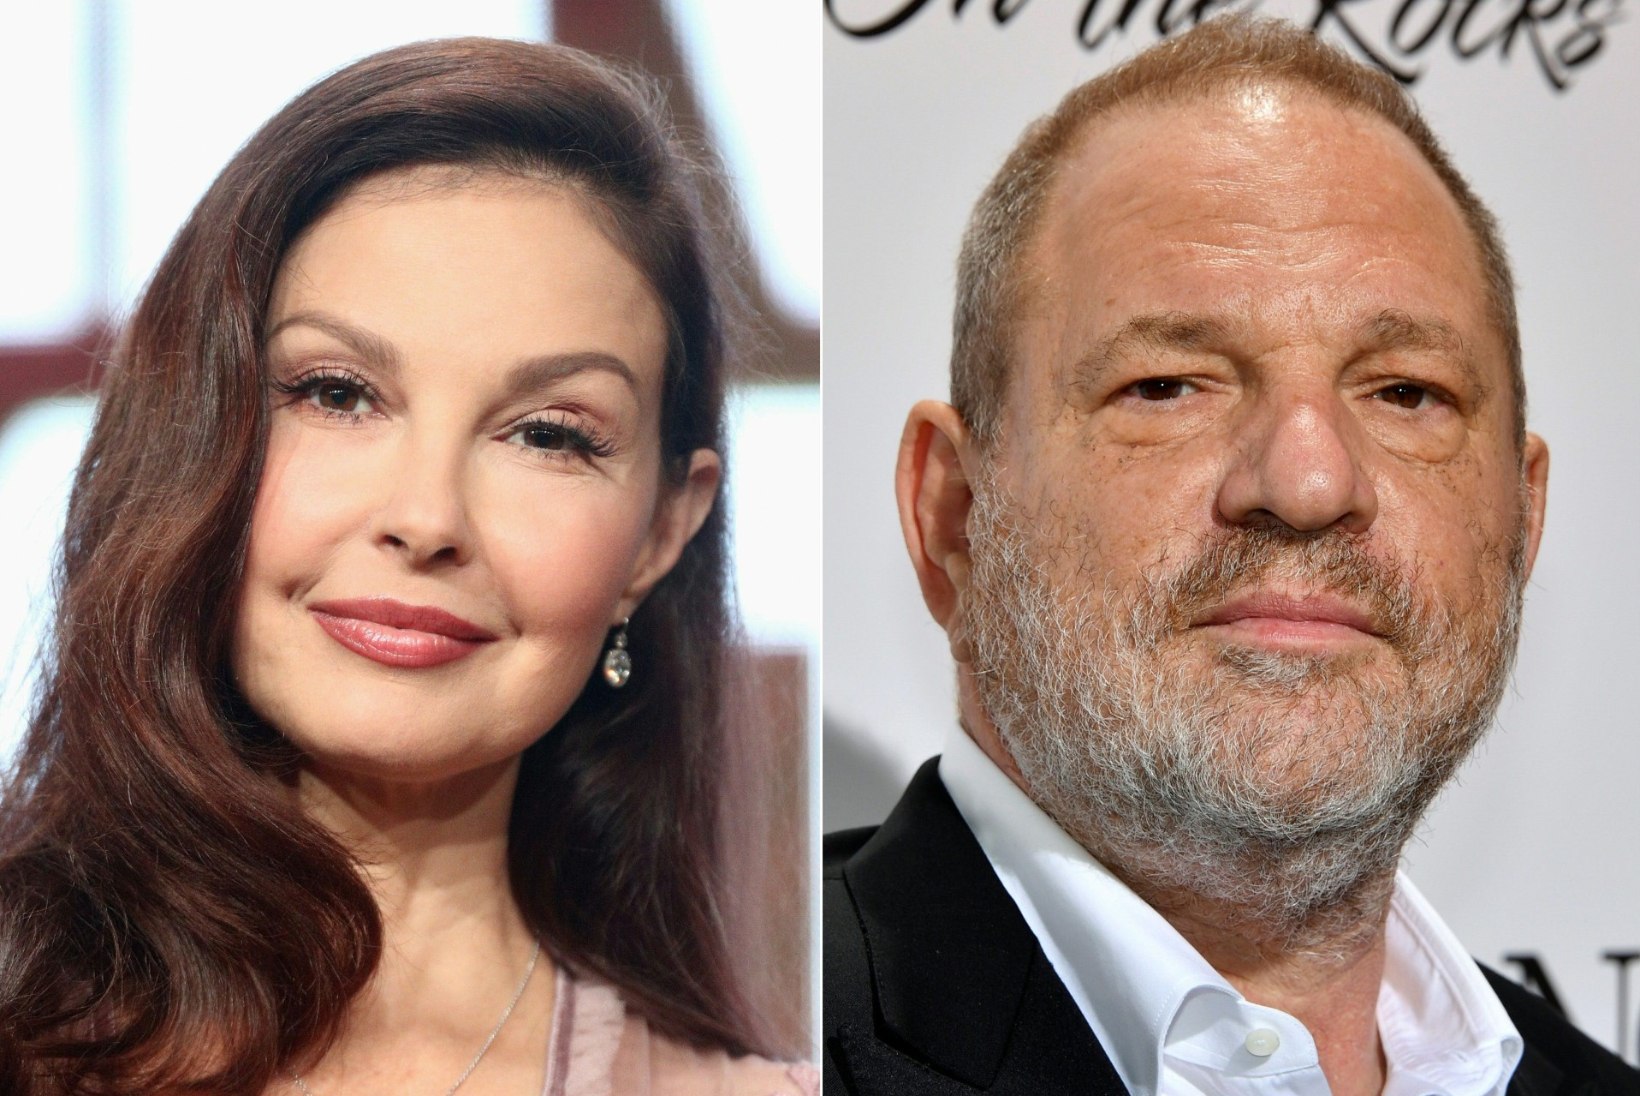 Ashley Judd sai loa Weinstein seksuaalse ahistamise eest kohtusse kaevata